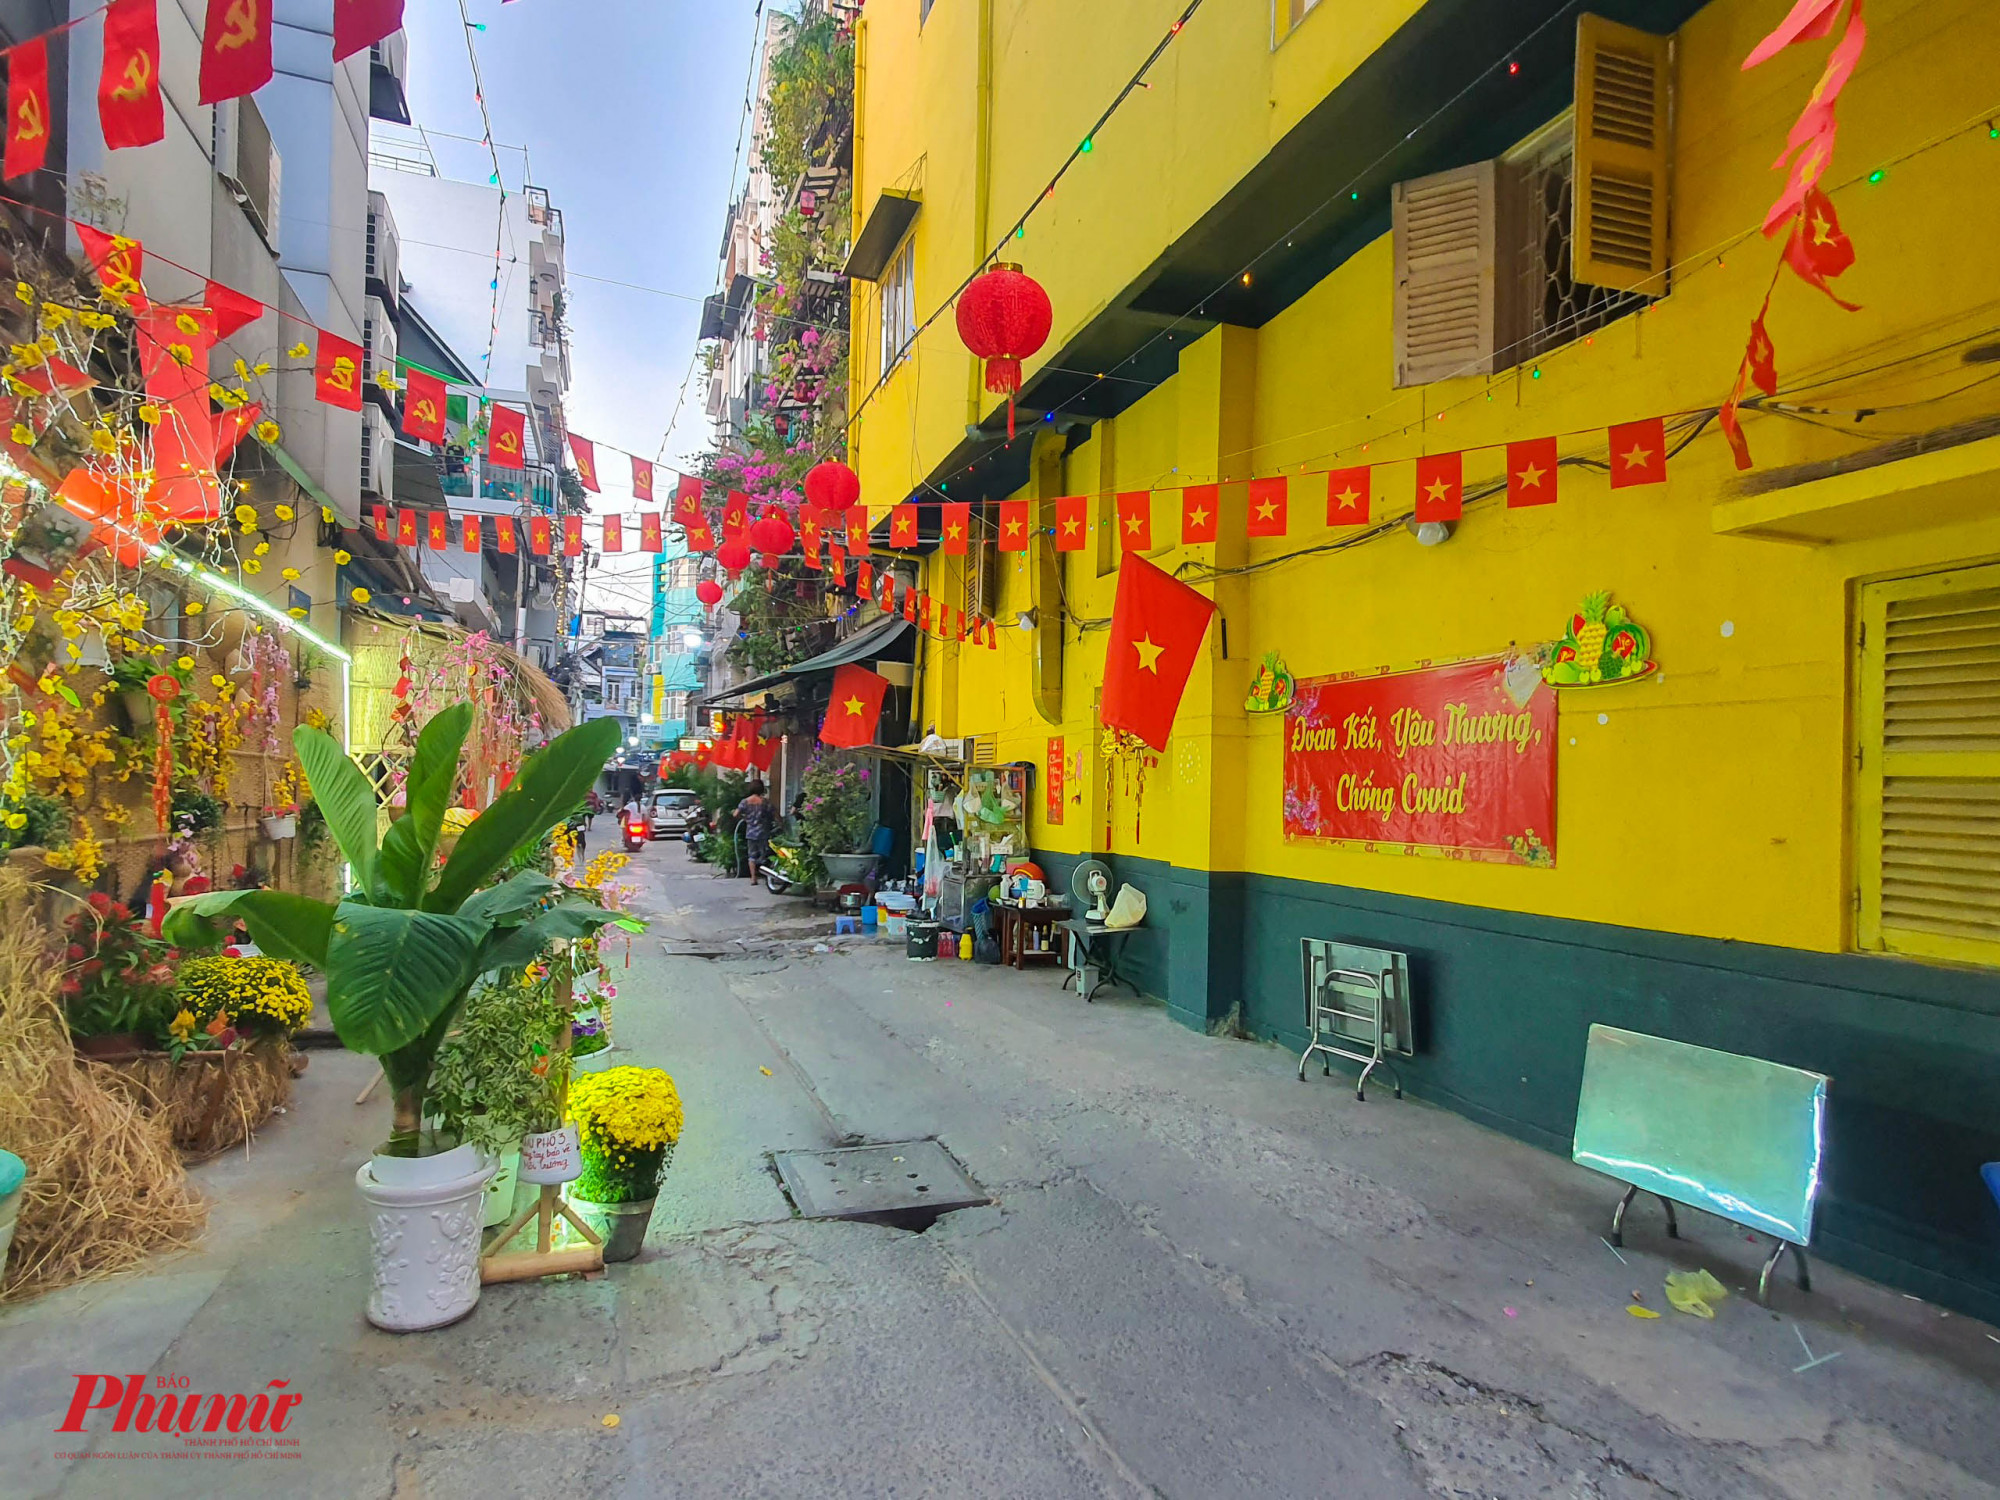 Khu phố 3, hẻm 100 đường Trần Hưng Đạo, Quận 1 nổi bật với nền tường màu vàng kèm các tiểu cảnh tranh trí Tết